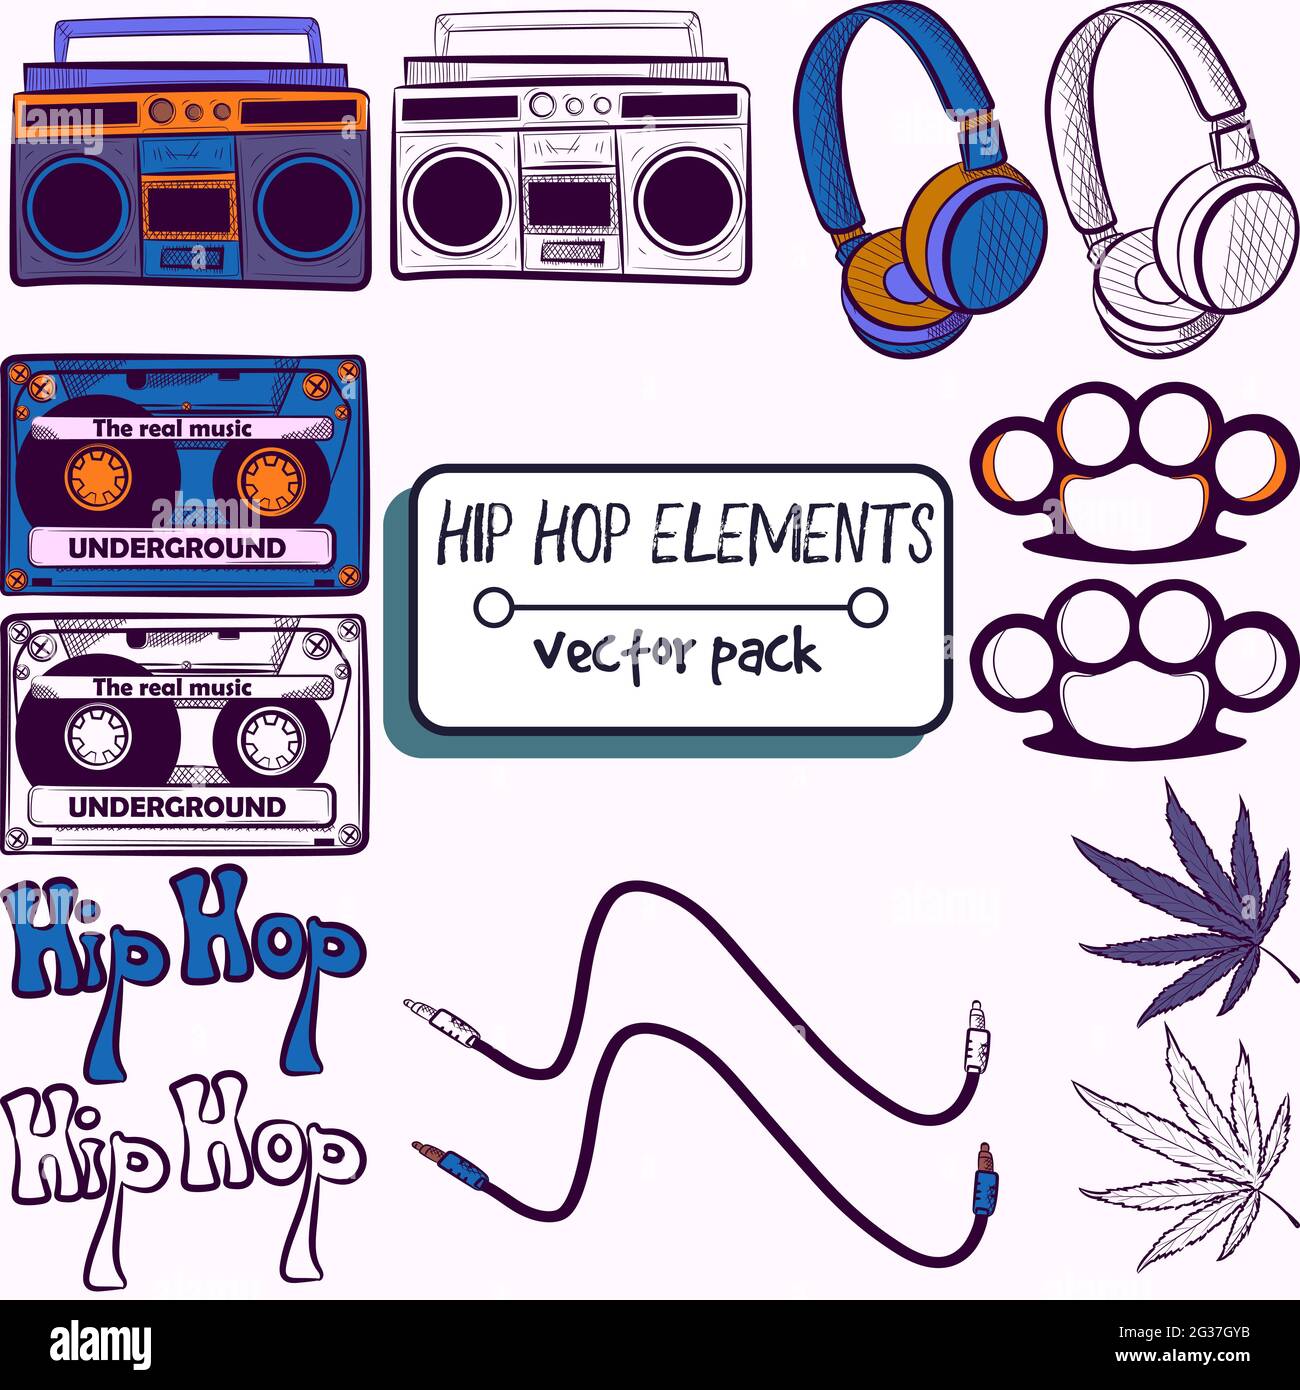 Pack mit Hiphop, Techno, Tanz-Elementen. Sammlung mit Kassette, Radio, Kopfhörer, Messinggelenke, Marihuana, Kabel- und Hip-Hop-Text. Vintage und Stock Vektor